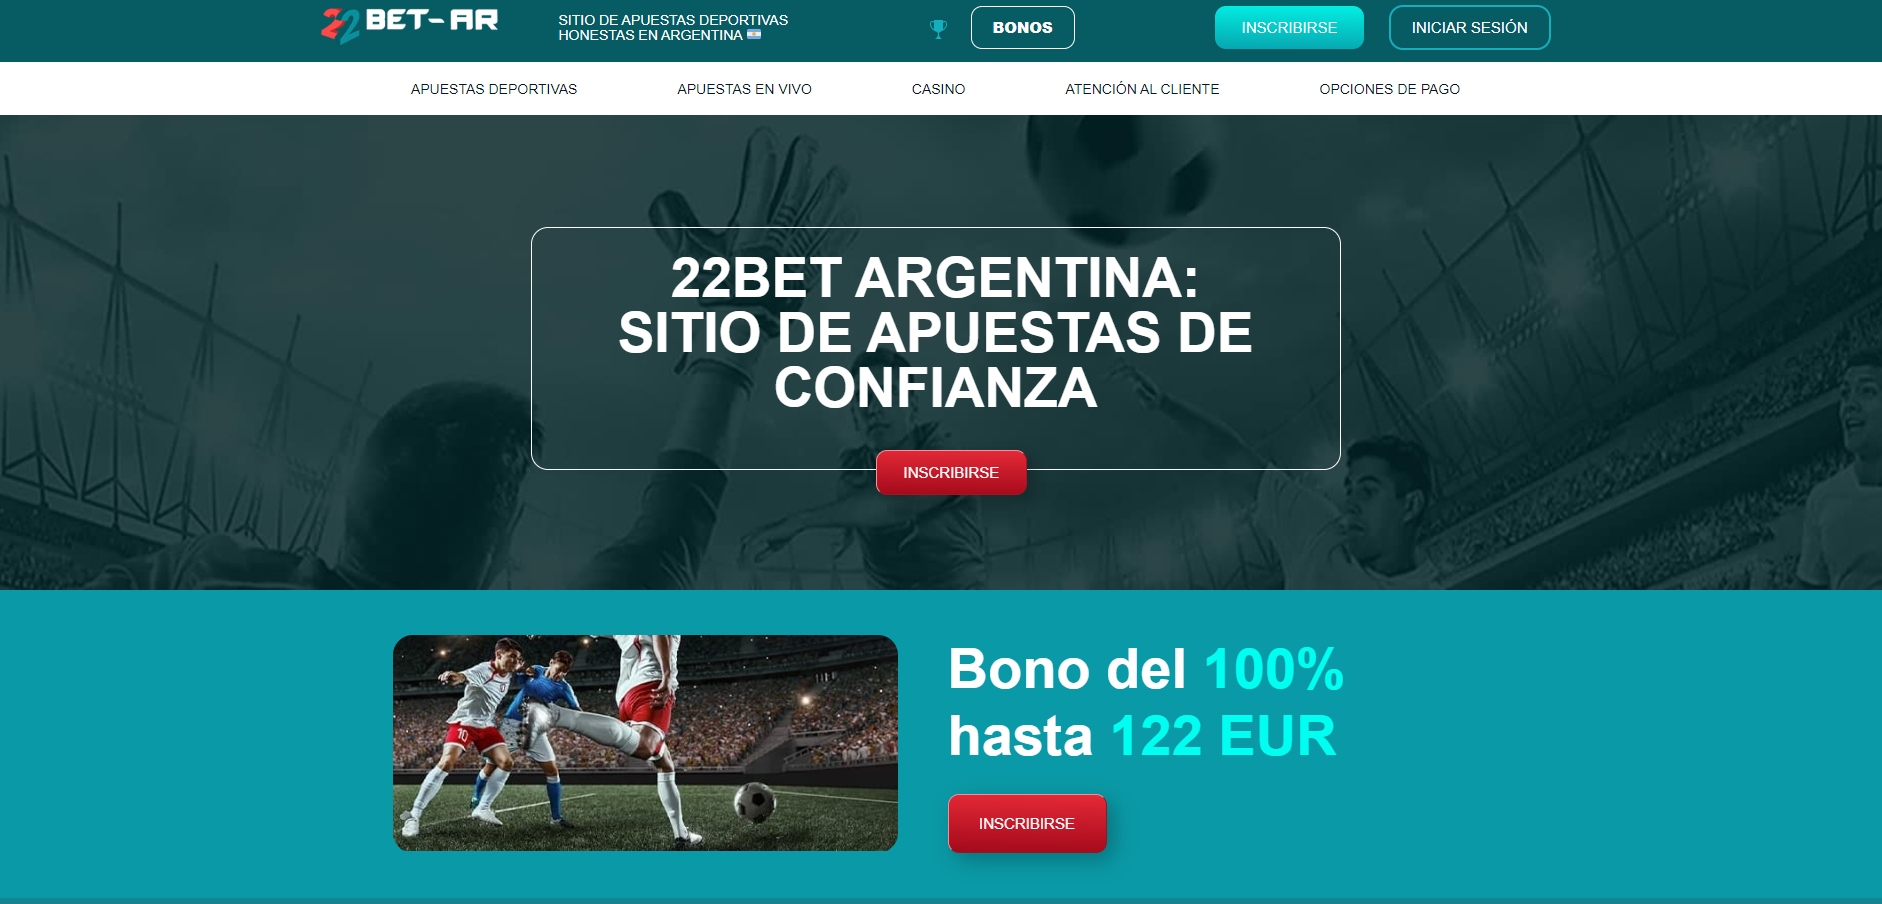 Cómo empezar mejores casinos online Argentina con menos de $ 110